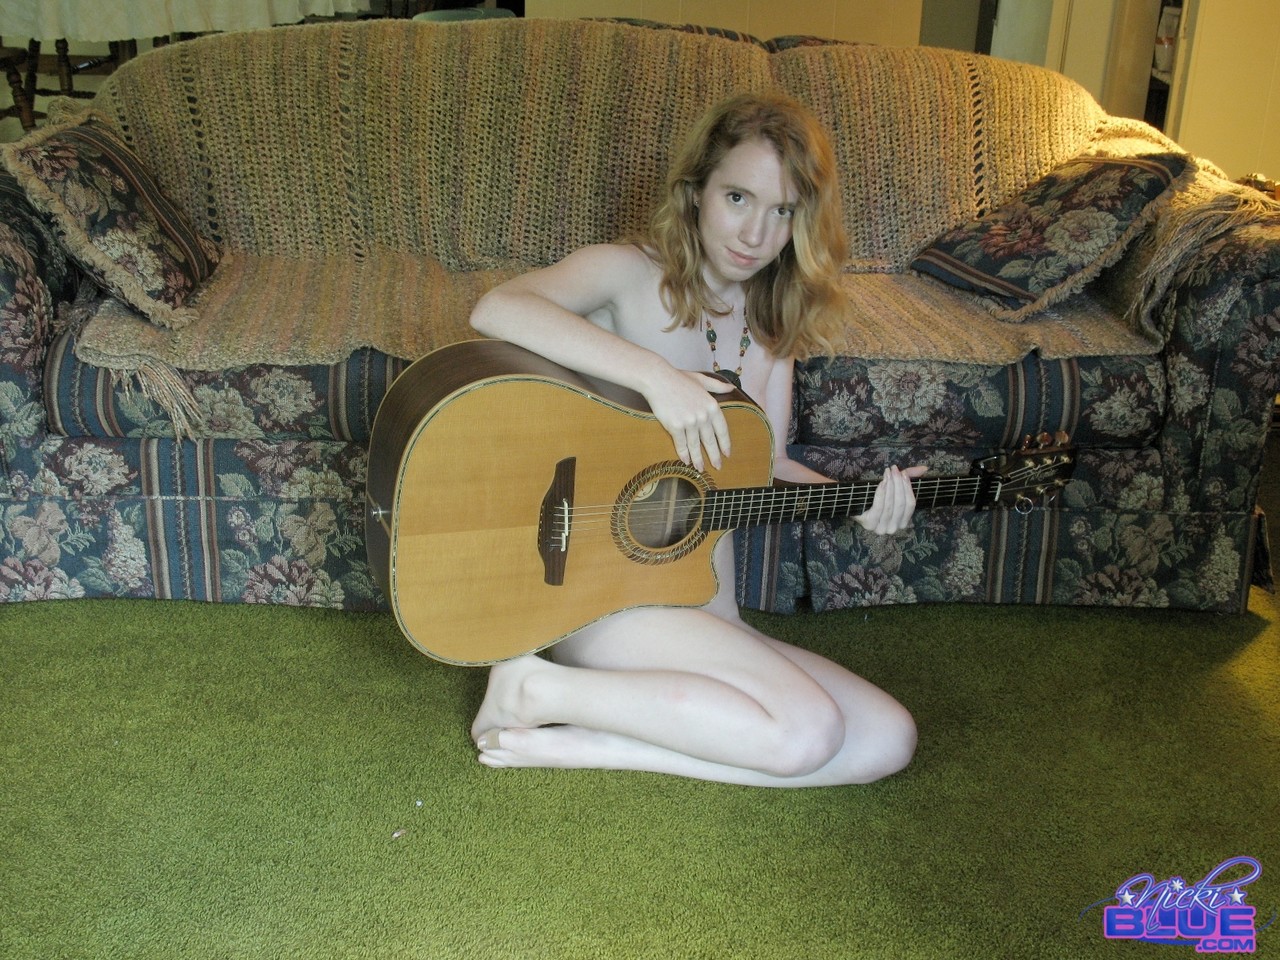 19-year-old babe Nicki Blue posing nude with a guitar in her hands foto pornográfica #424548935 | Pornstar Platinum Pics, Nicki Blue, Redhead, pornografia móvel